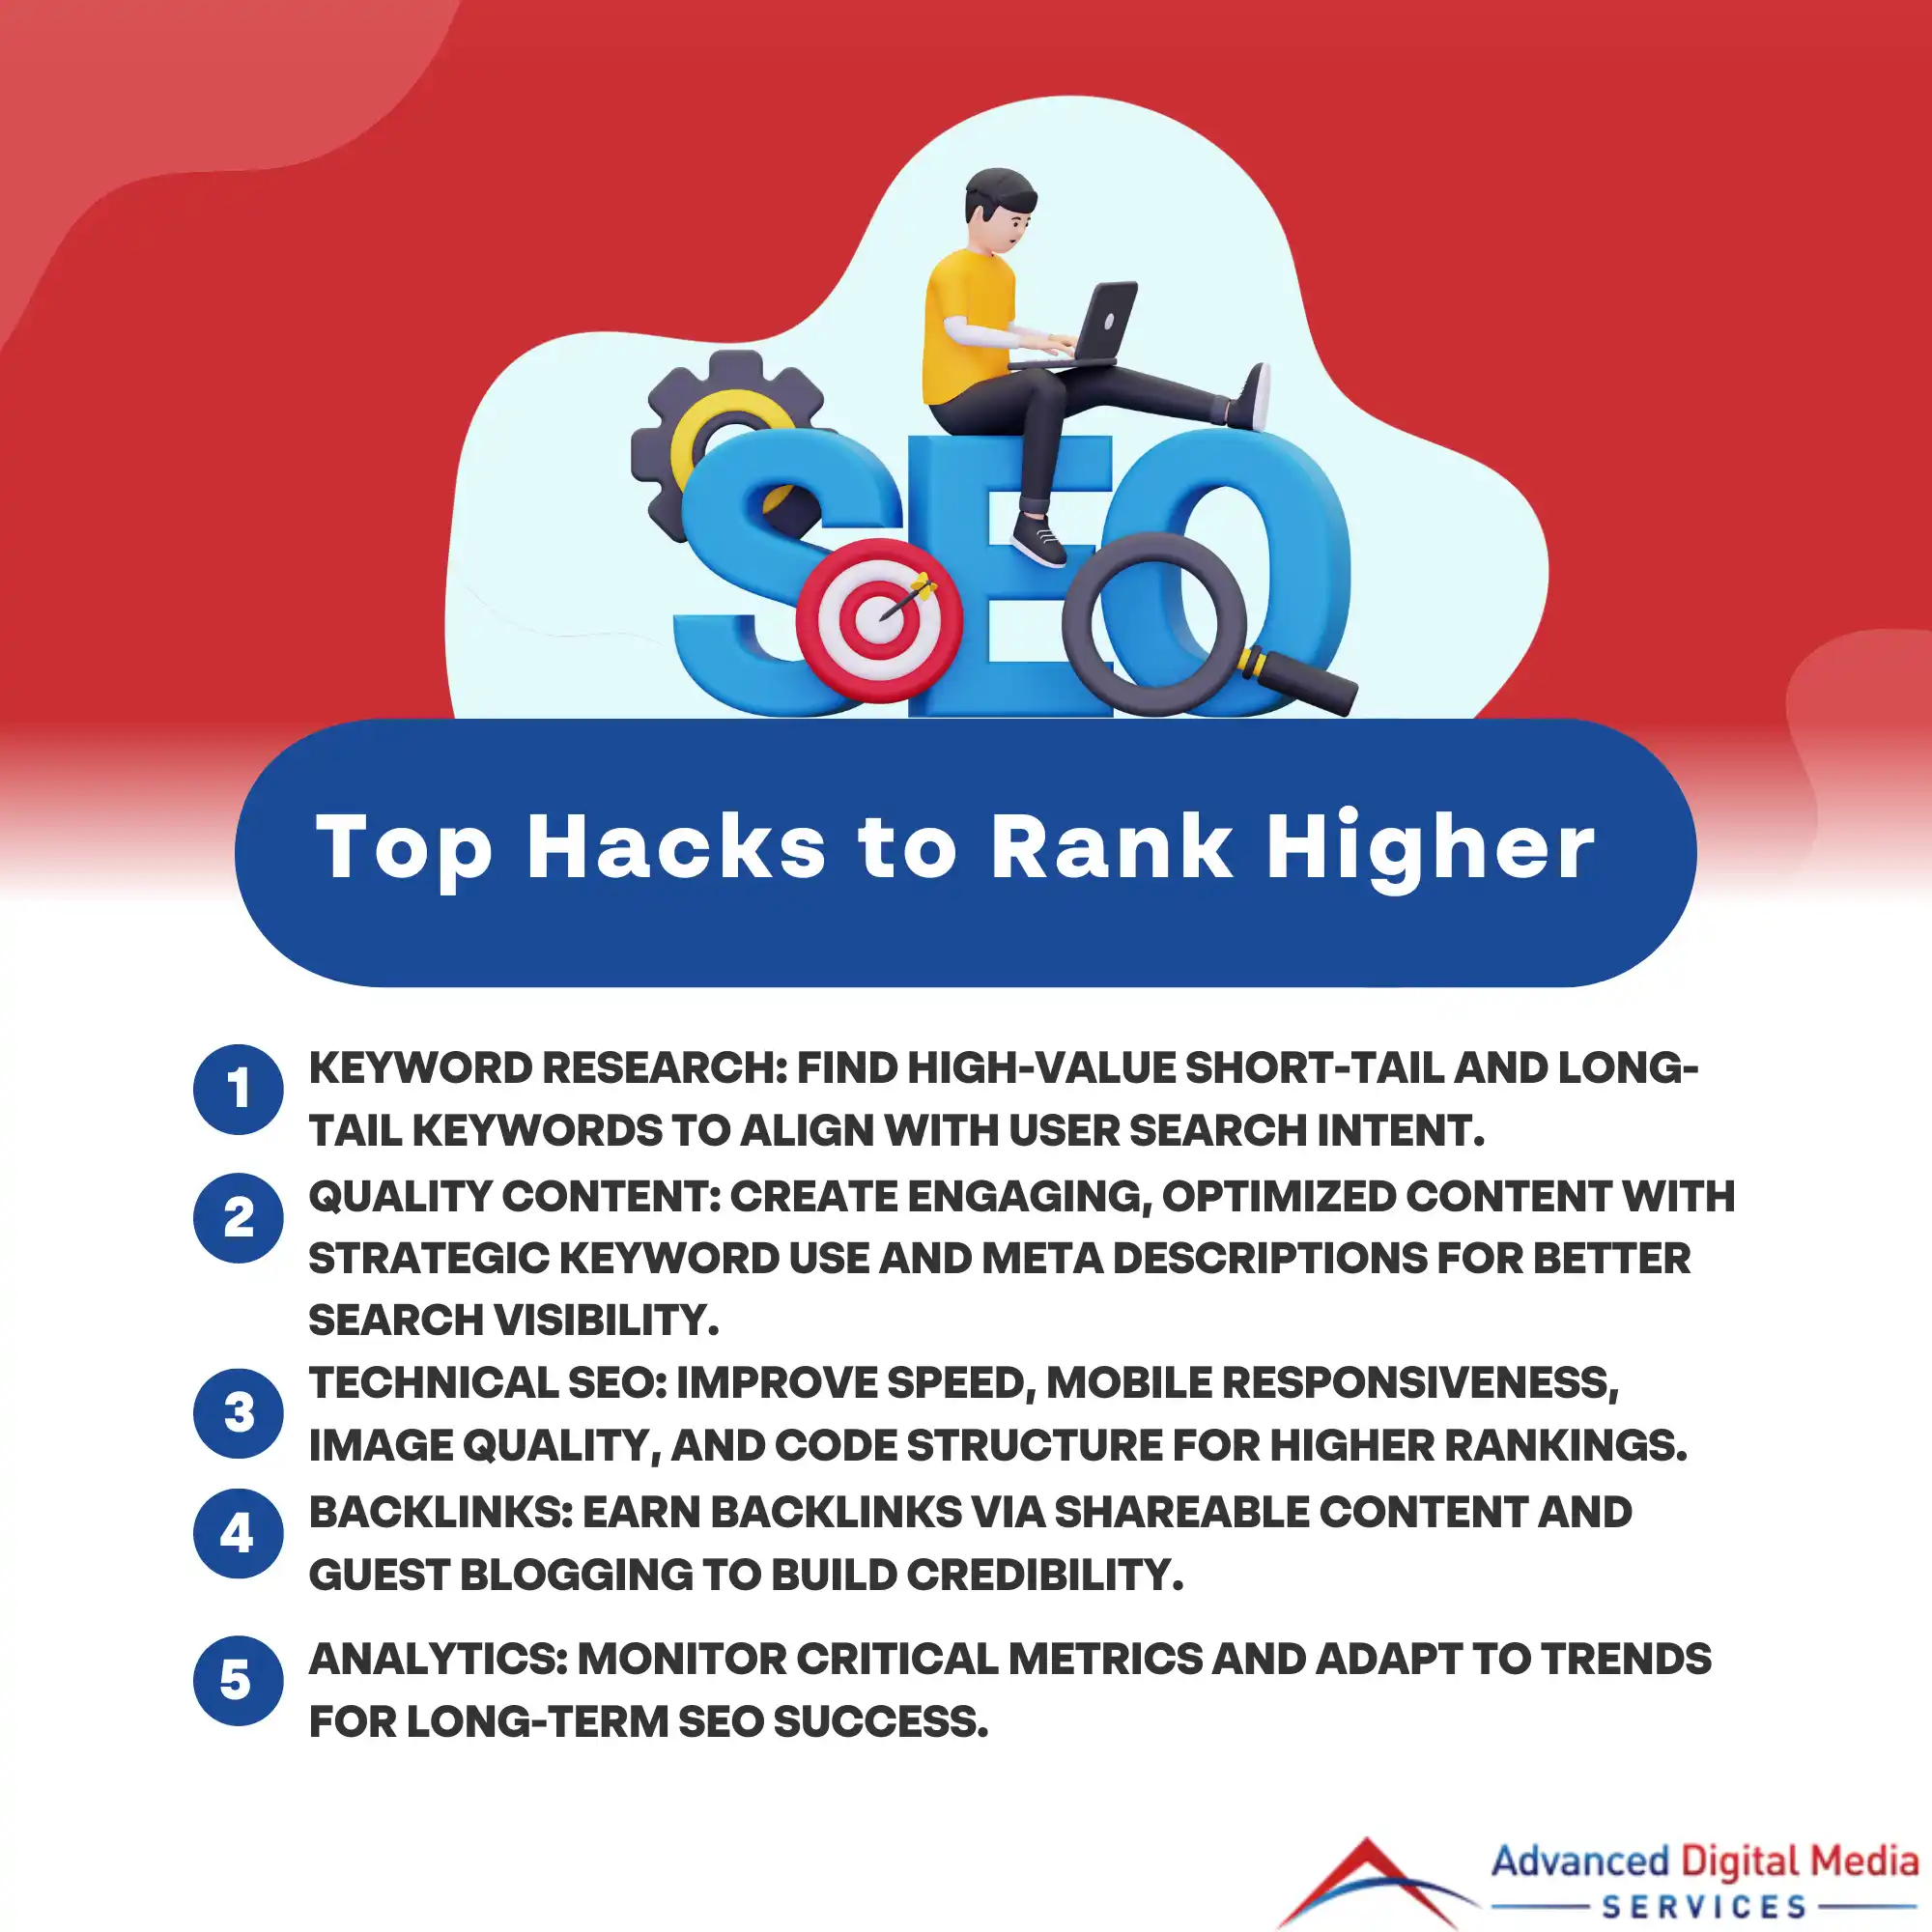 Top Hacks to Rank Higher